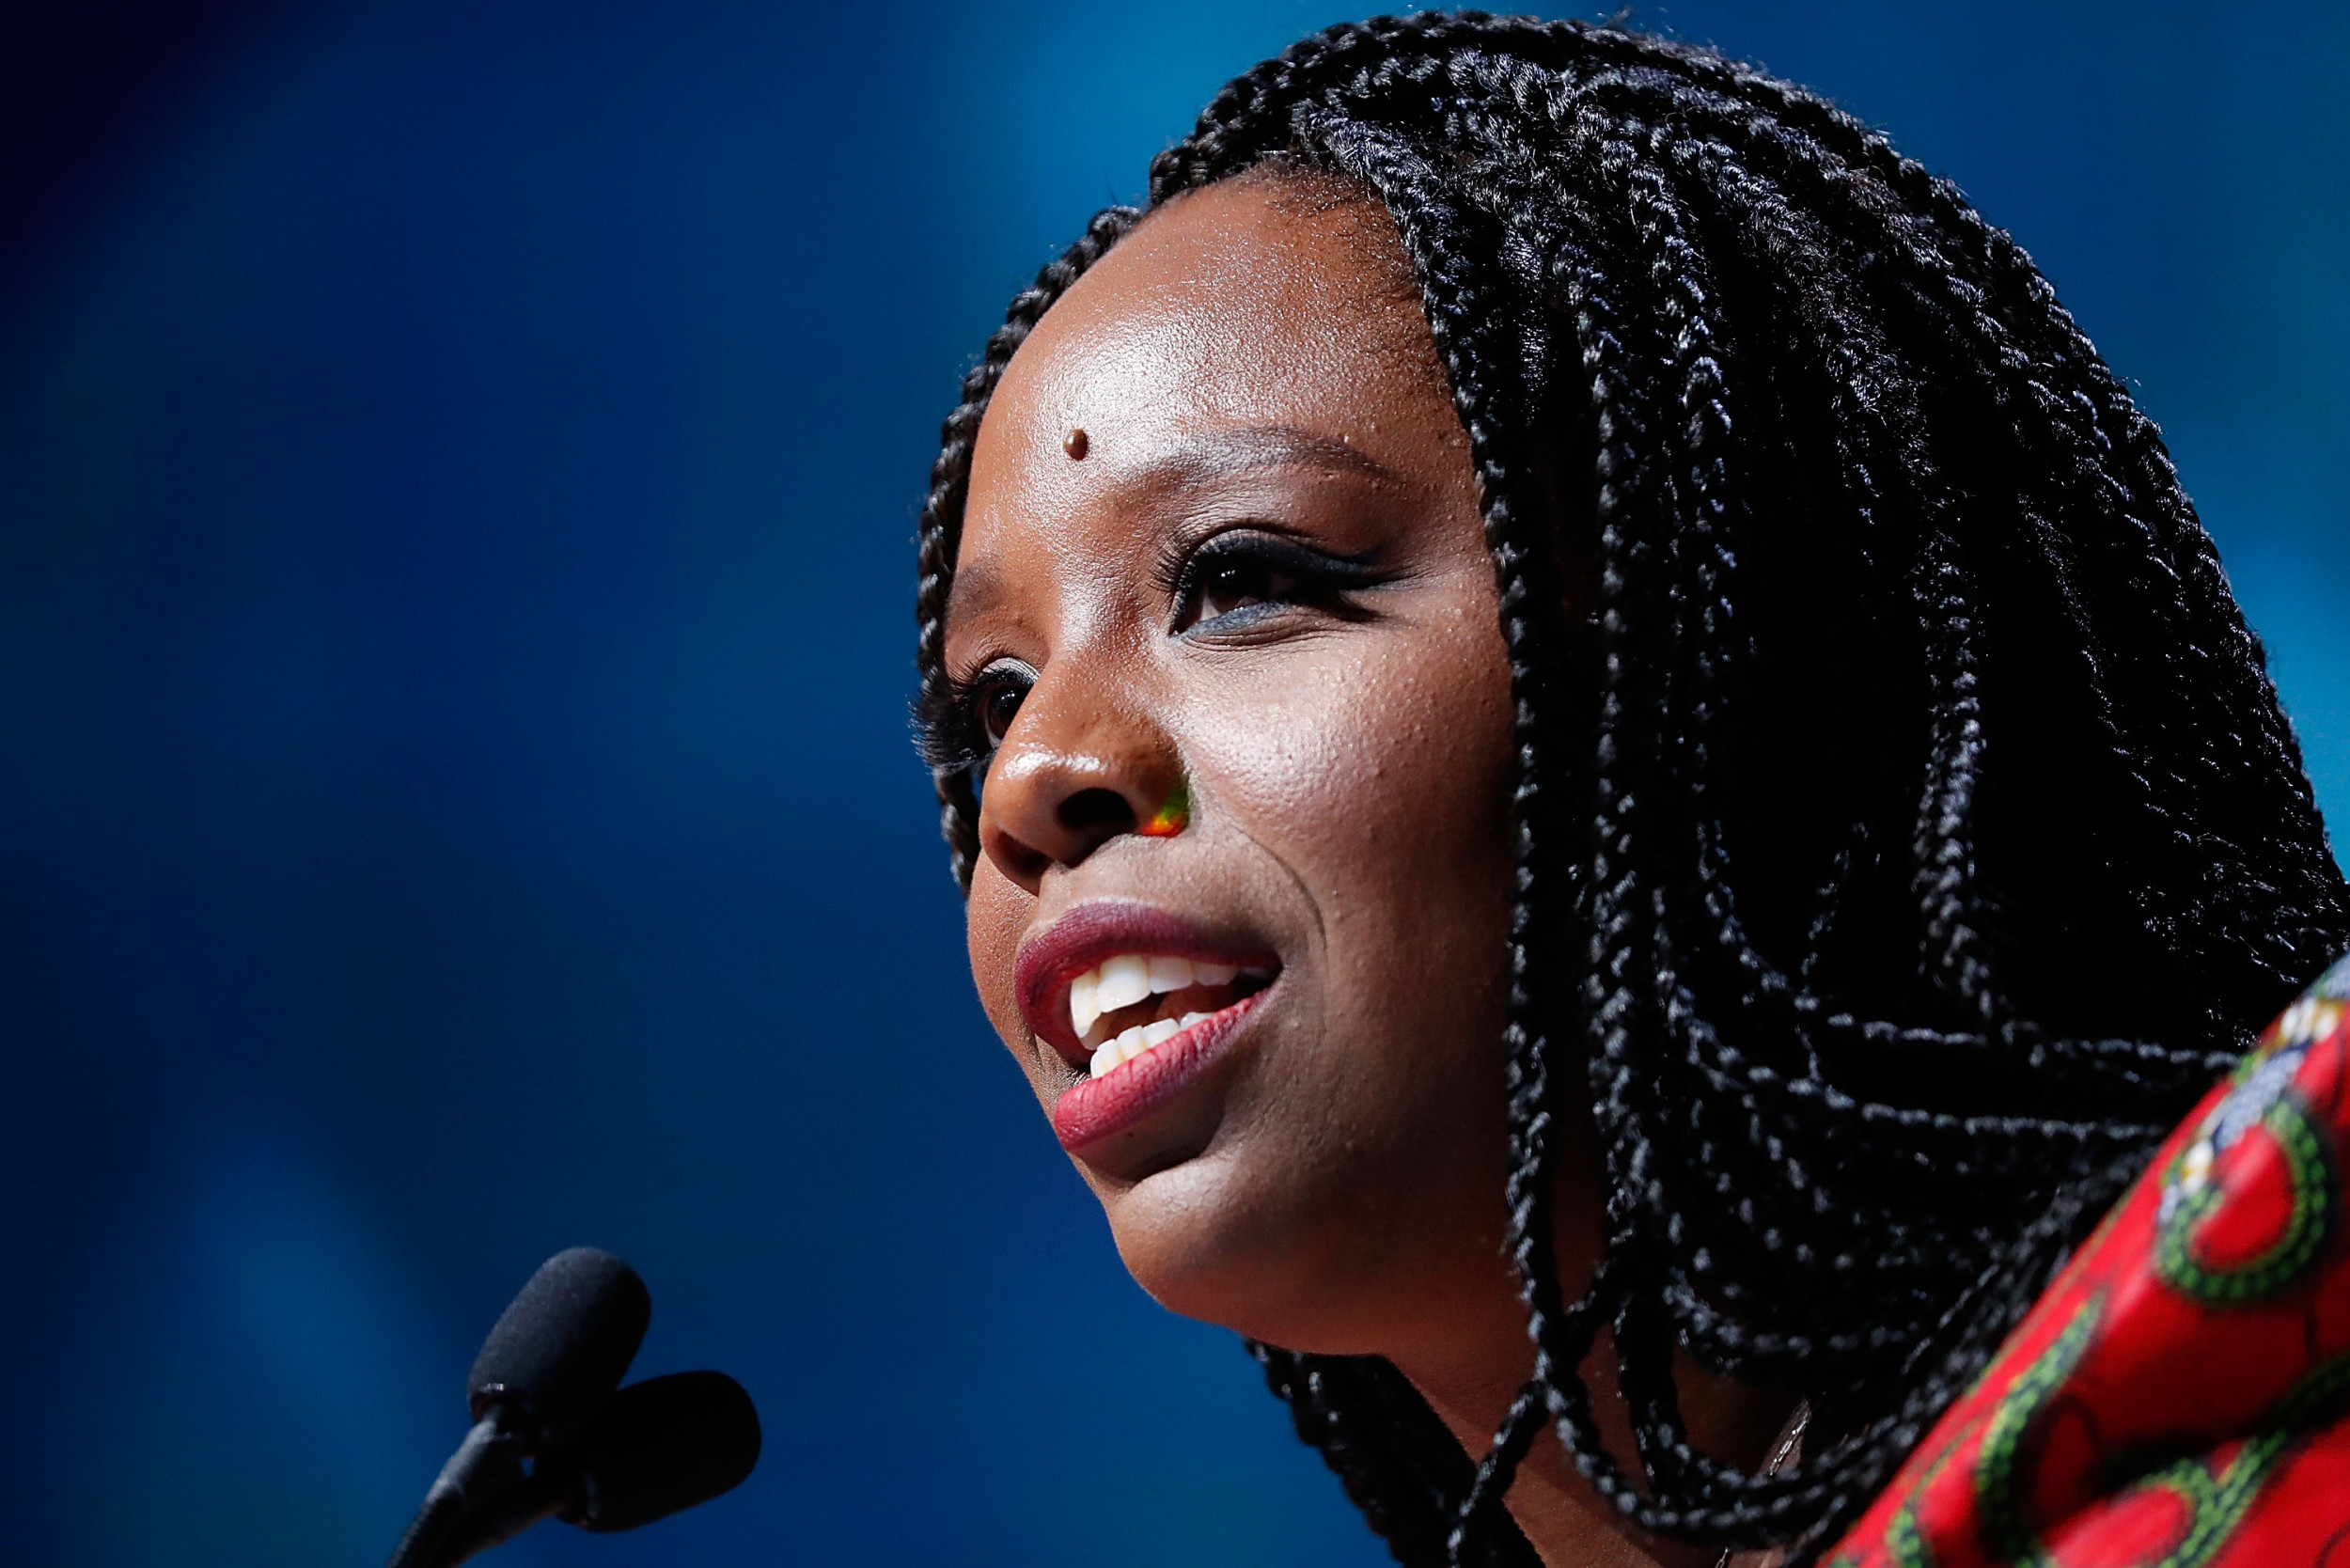 Одна из лидерш Black Lives Matter покидает свой пост